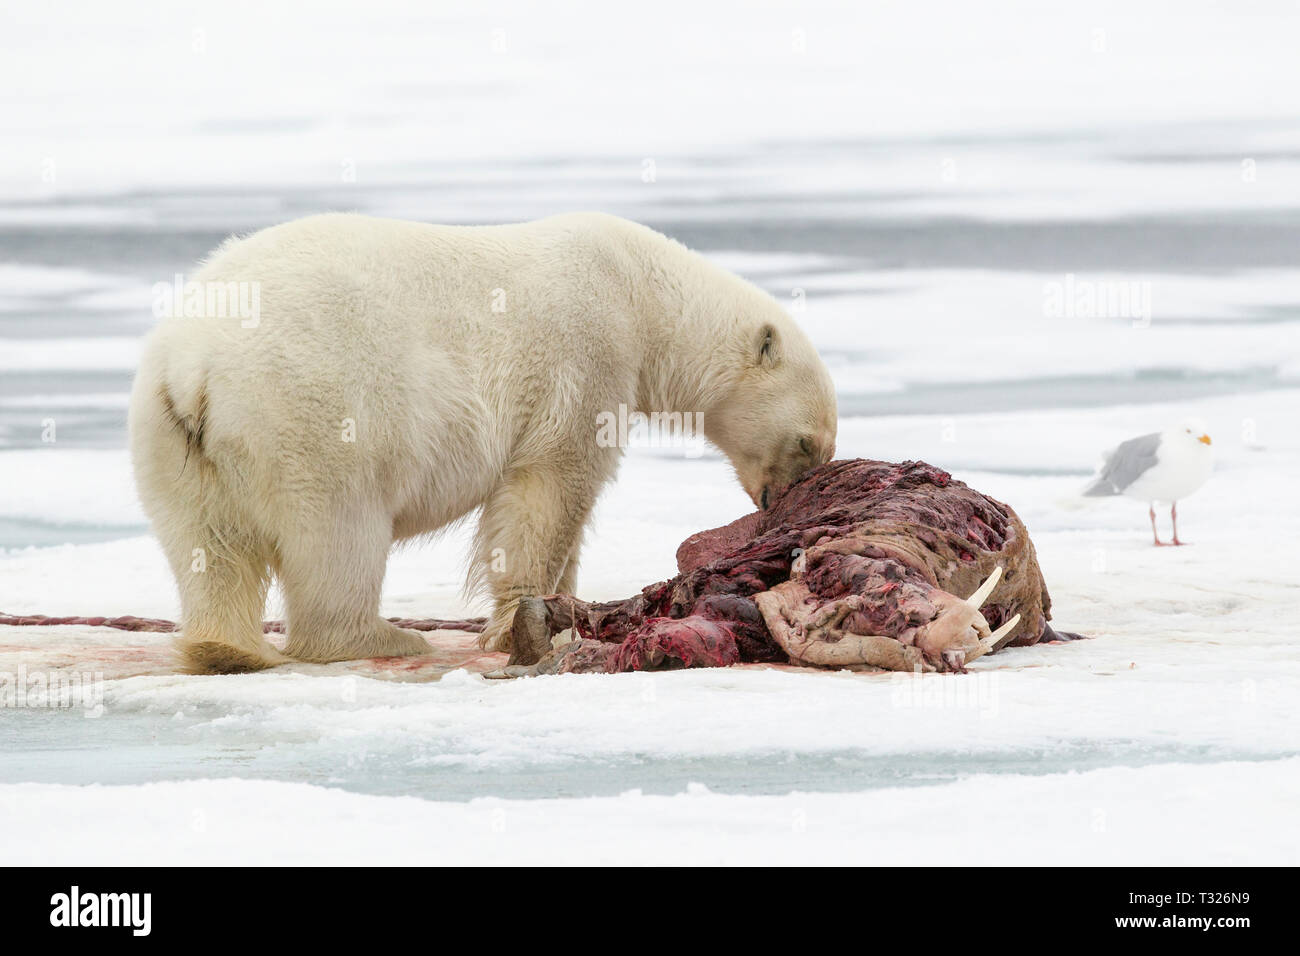 L'alimentation de l'ours polaire, le morse morts Ursus maritimus, Spitzberg, l'océan Arctique, en Norvège Banque D'Images